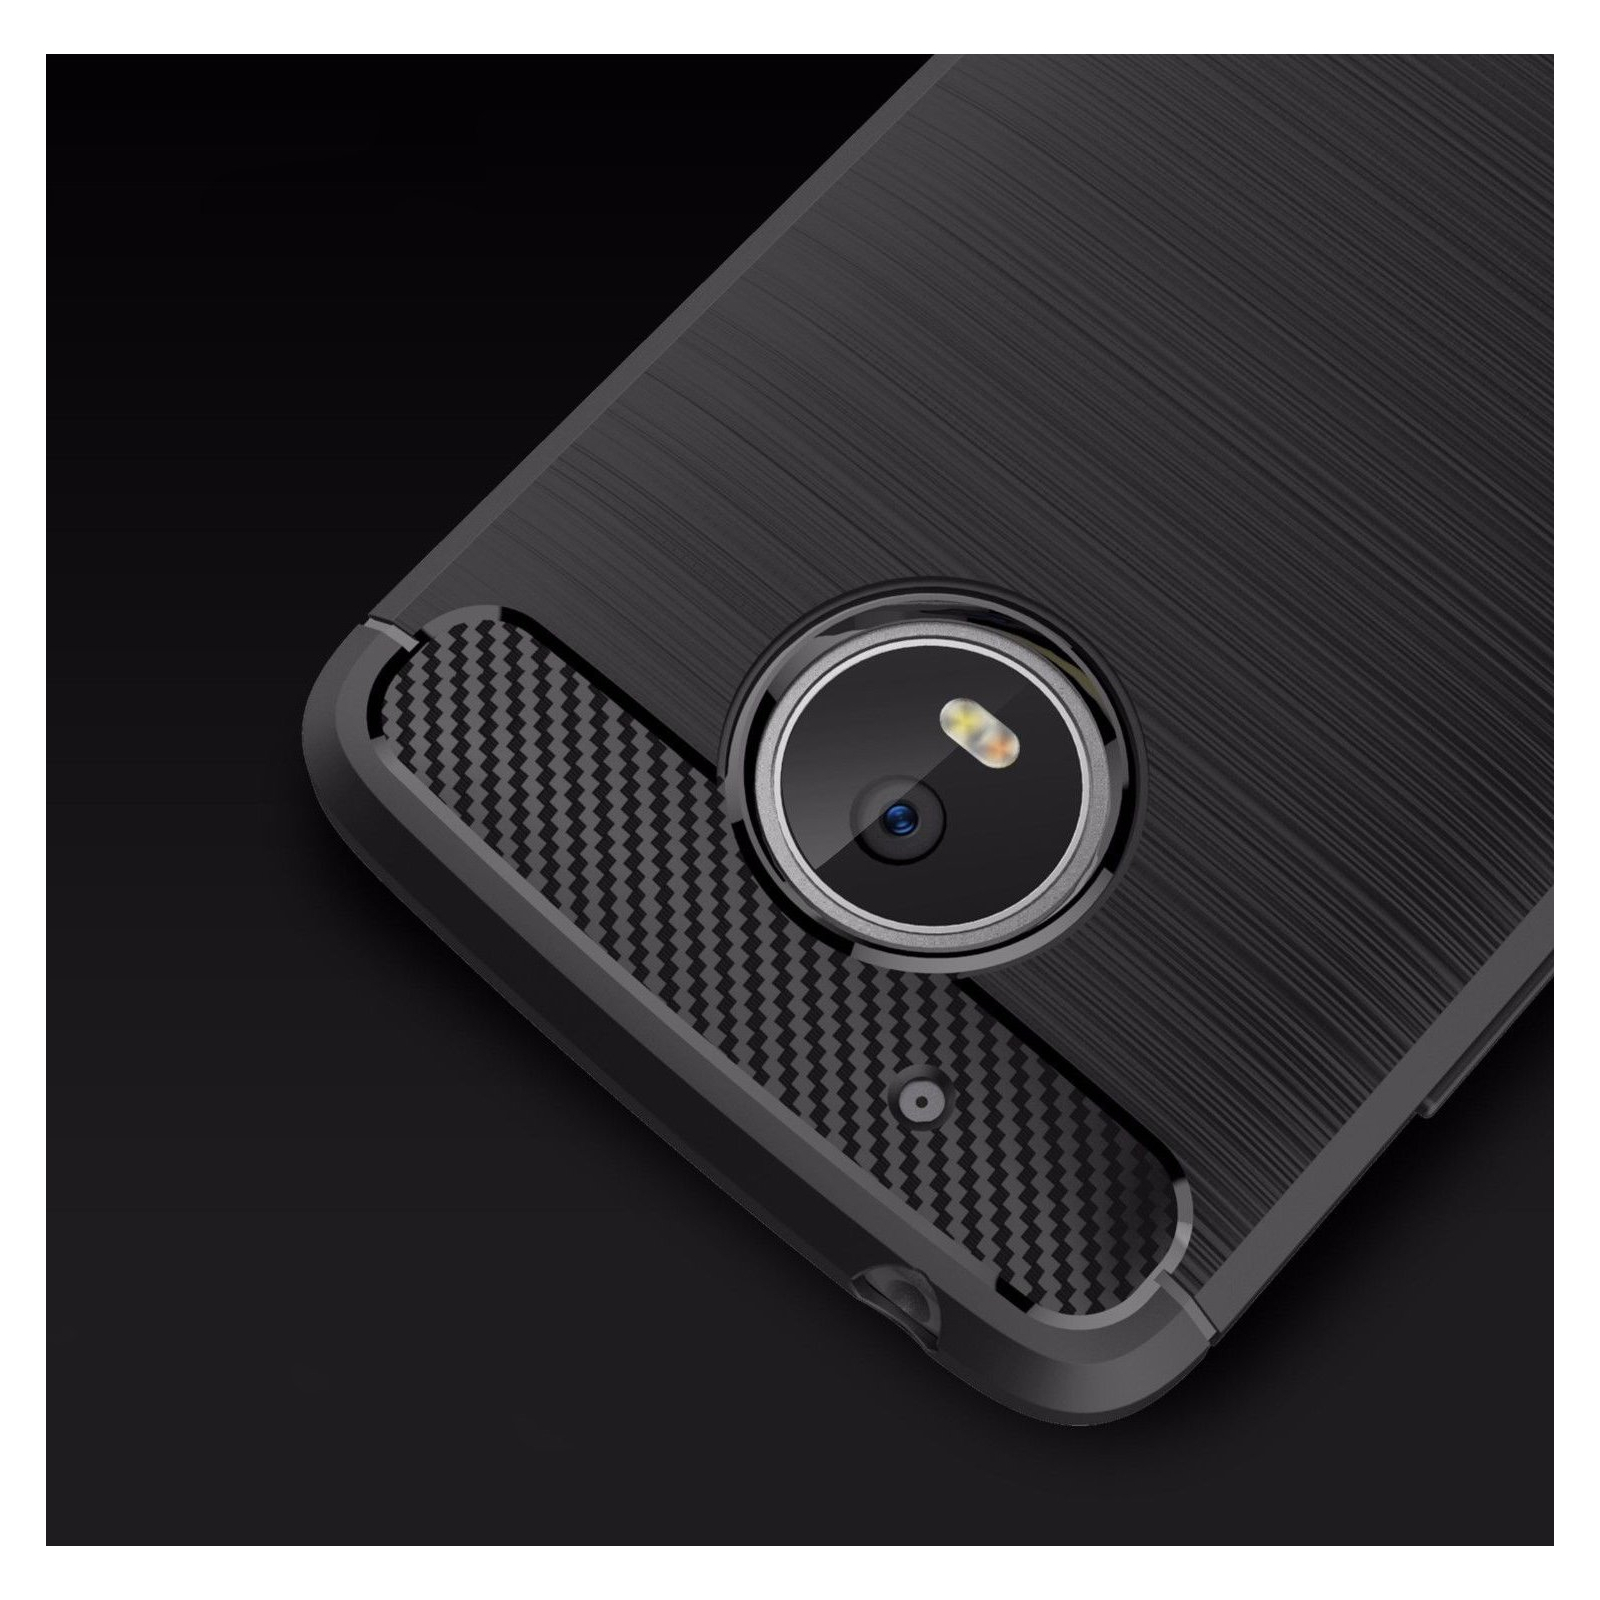 Чехол для мобильного телефона для Motorola Moto G5 Carbon Fiber (Black) Laudtec (LT-MMG5B) изображение 6